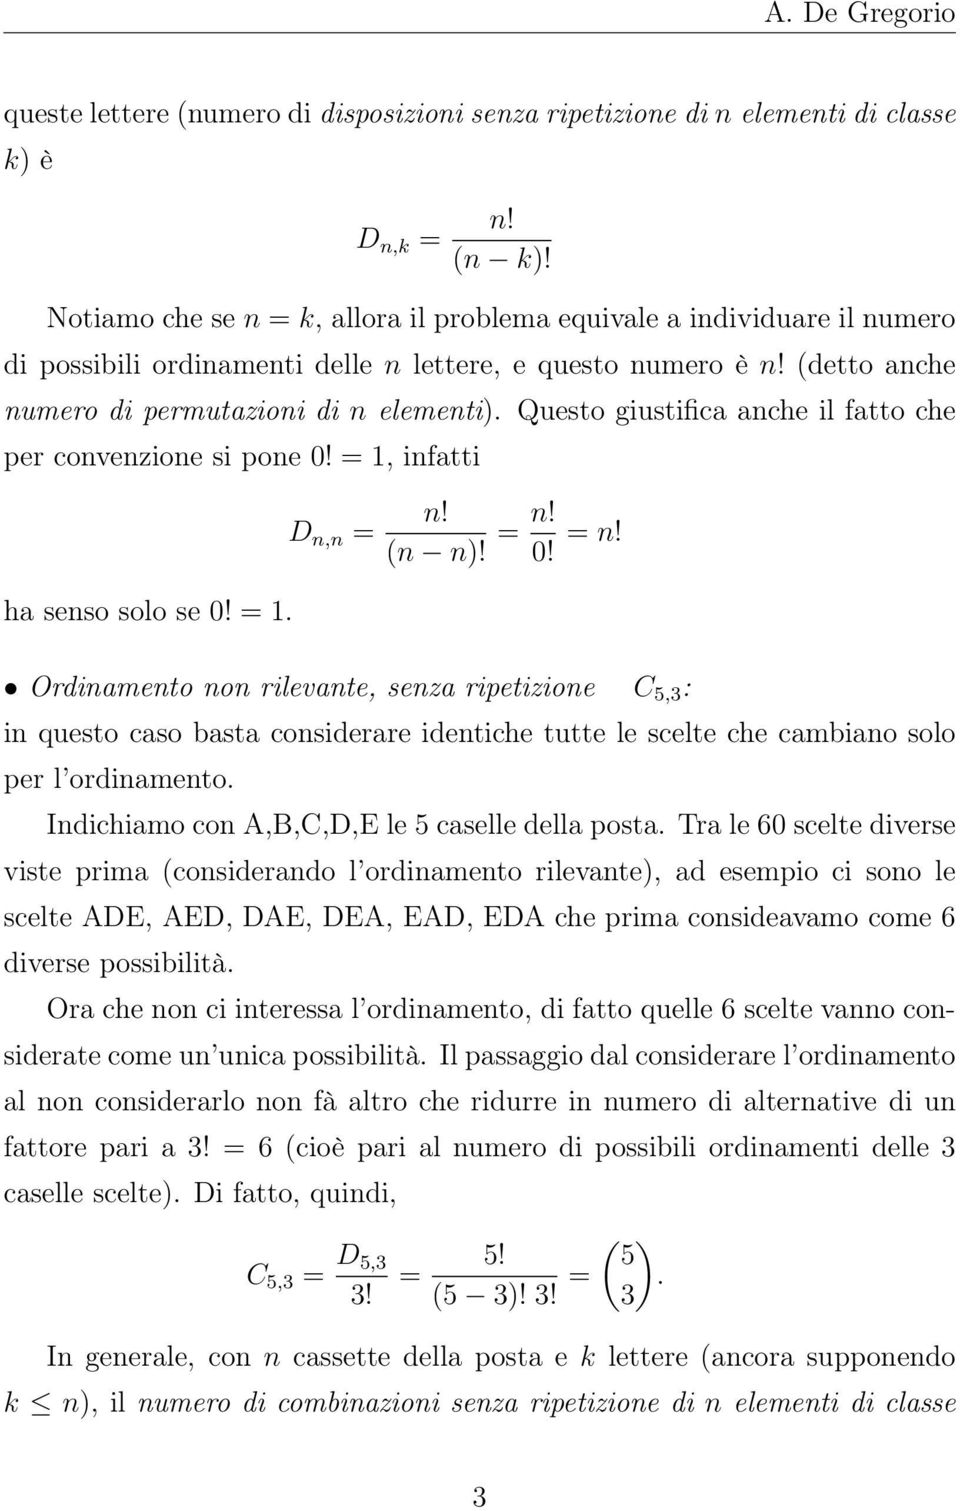 (detto anche numero di permutazioni di n elementi) Questo giustifica anche il fatto che per convenzione si pone 0! = 1, infatti ha senso solo se 0! = 1 D n,n = n!